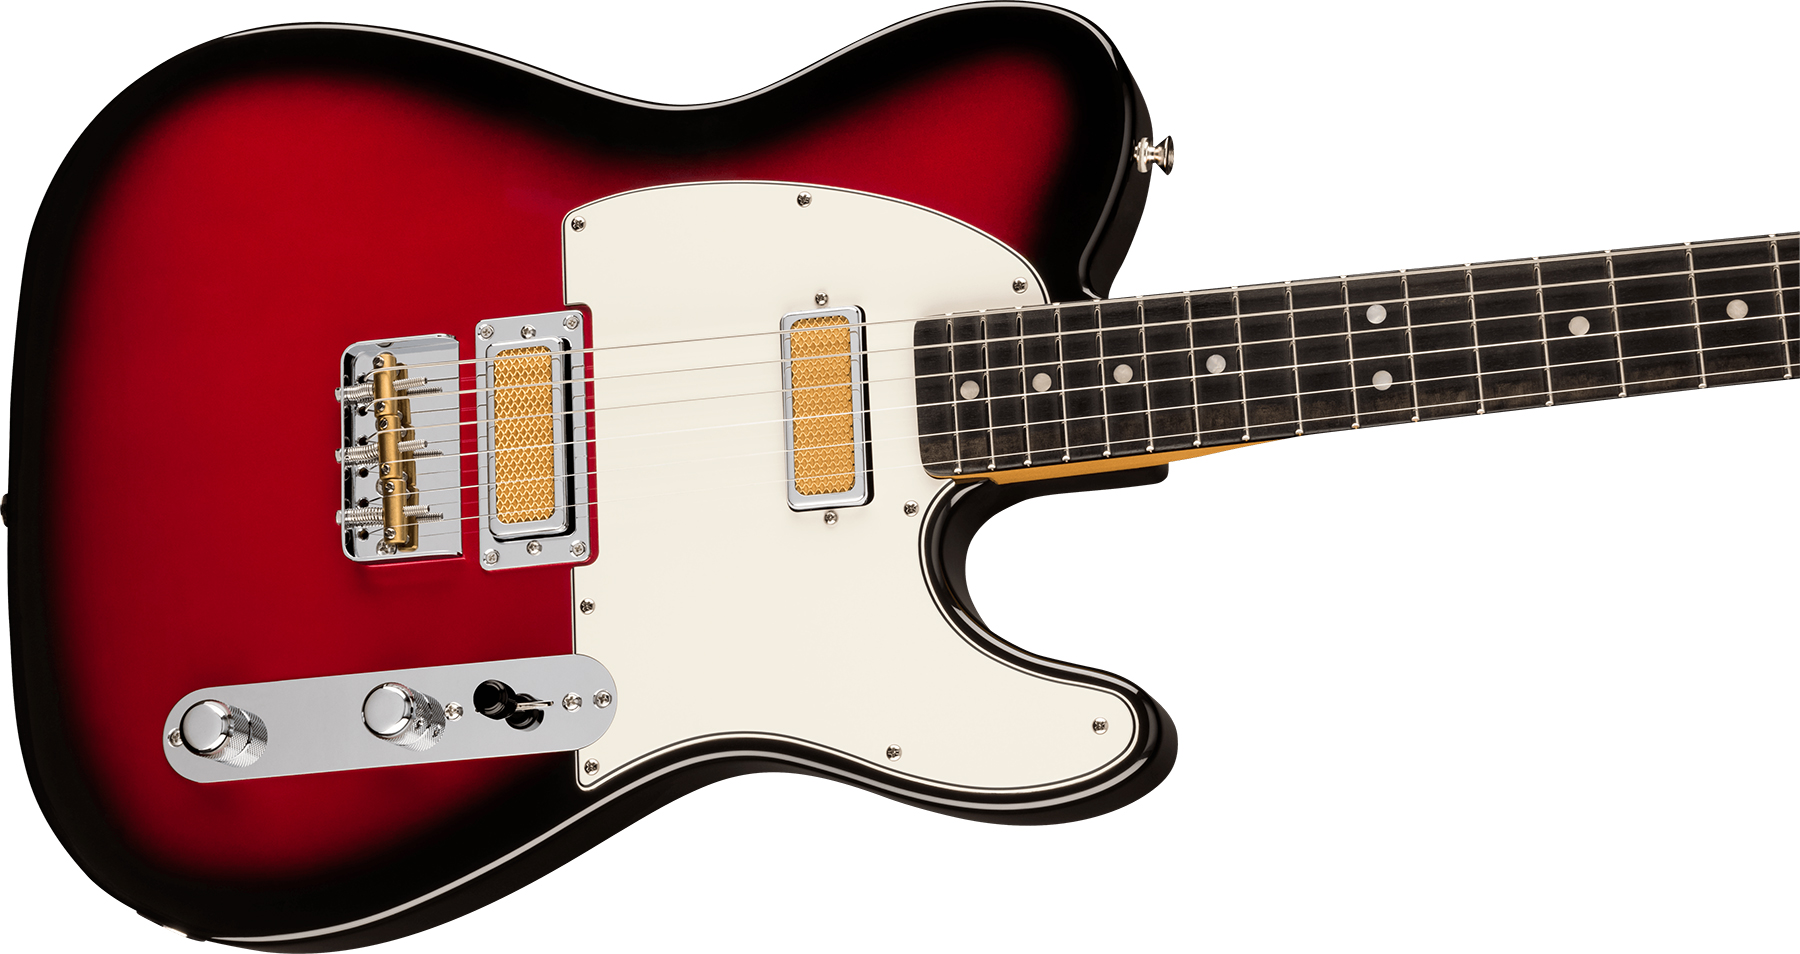 Fender Tele Gold Foil Ltd Mex 2mh Ht Eb - Candy Apple Burst - Guitarra eléctrica con forma de tel - Variation 2